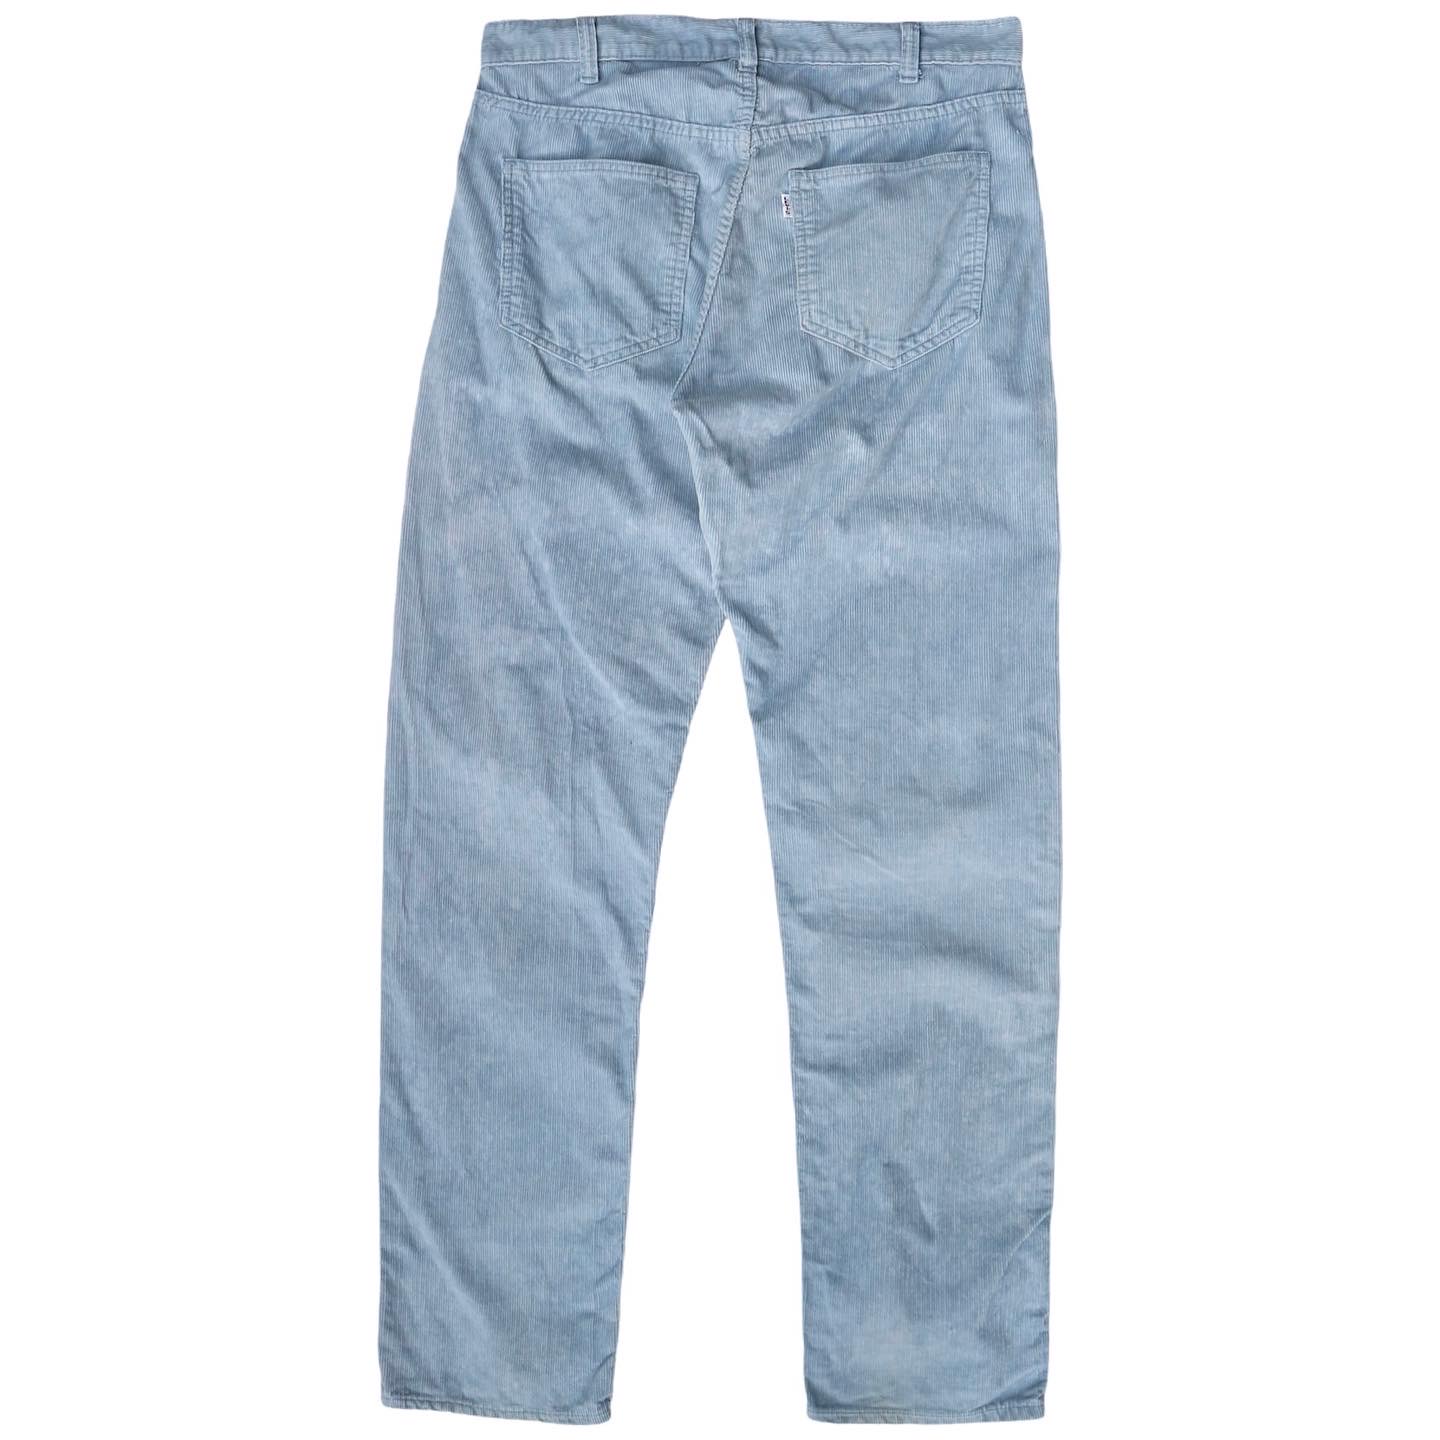 90s LEVI’S Corduroy Pants Size 33